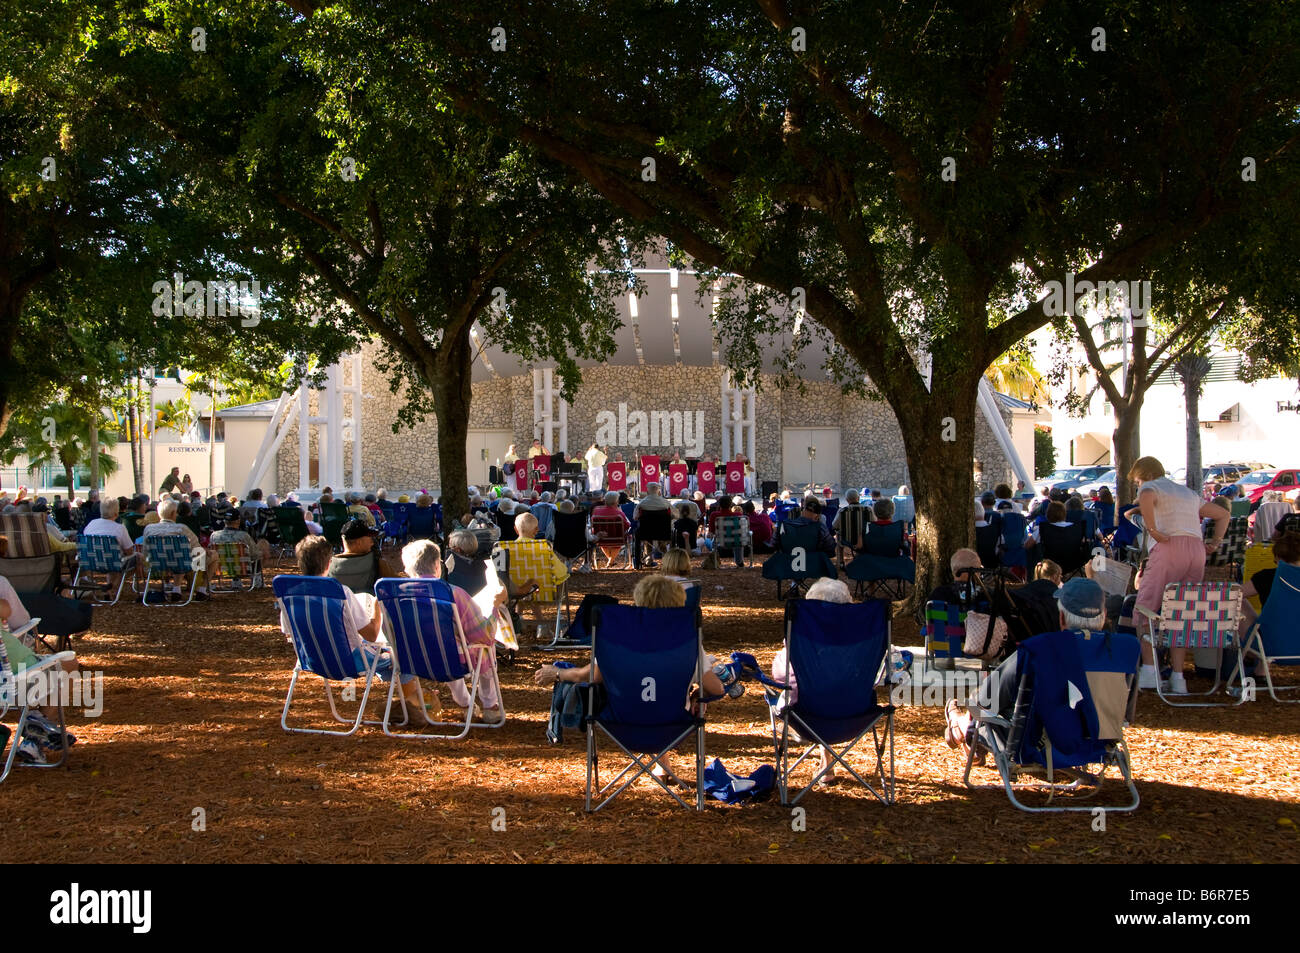 Concert en plein air dans le parc de Floride Naples fl vacances d'hiver décembre foule bandshell chaises Banque D'Images